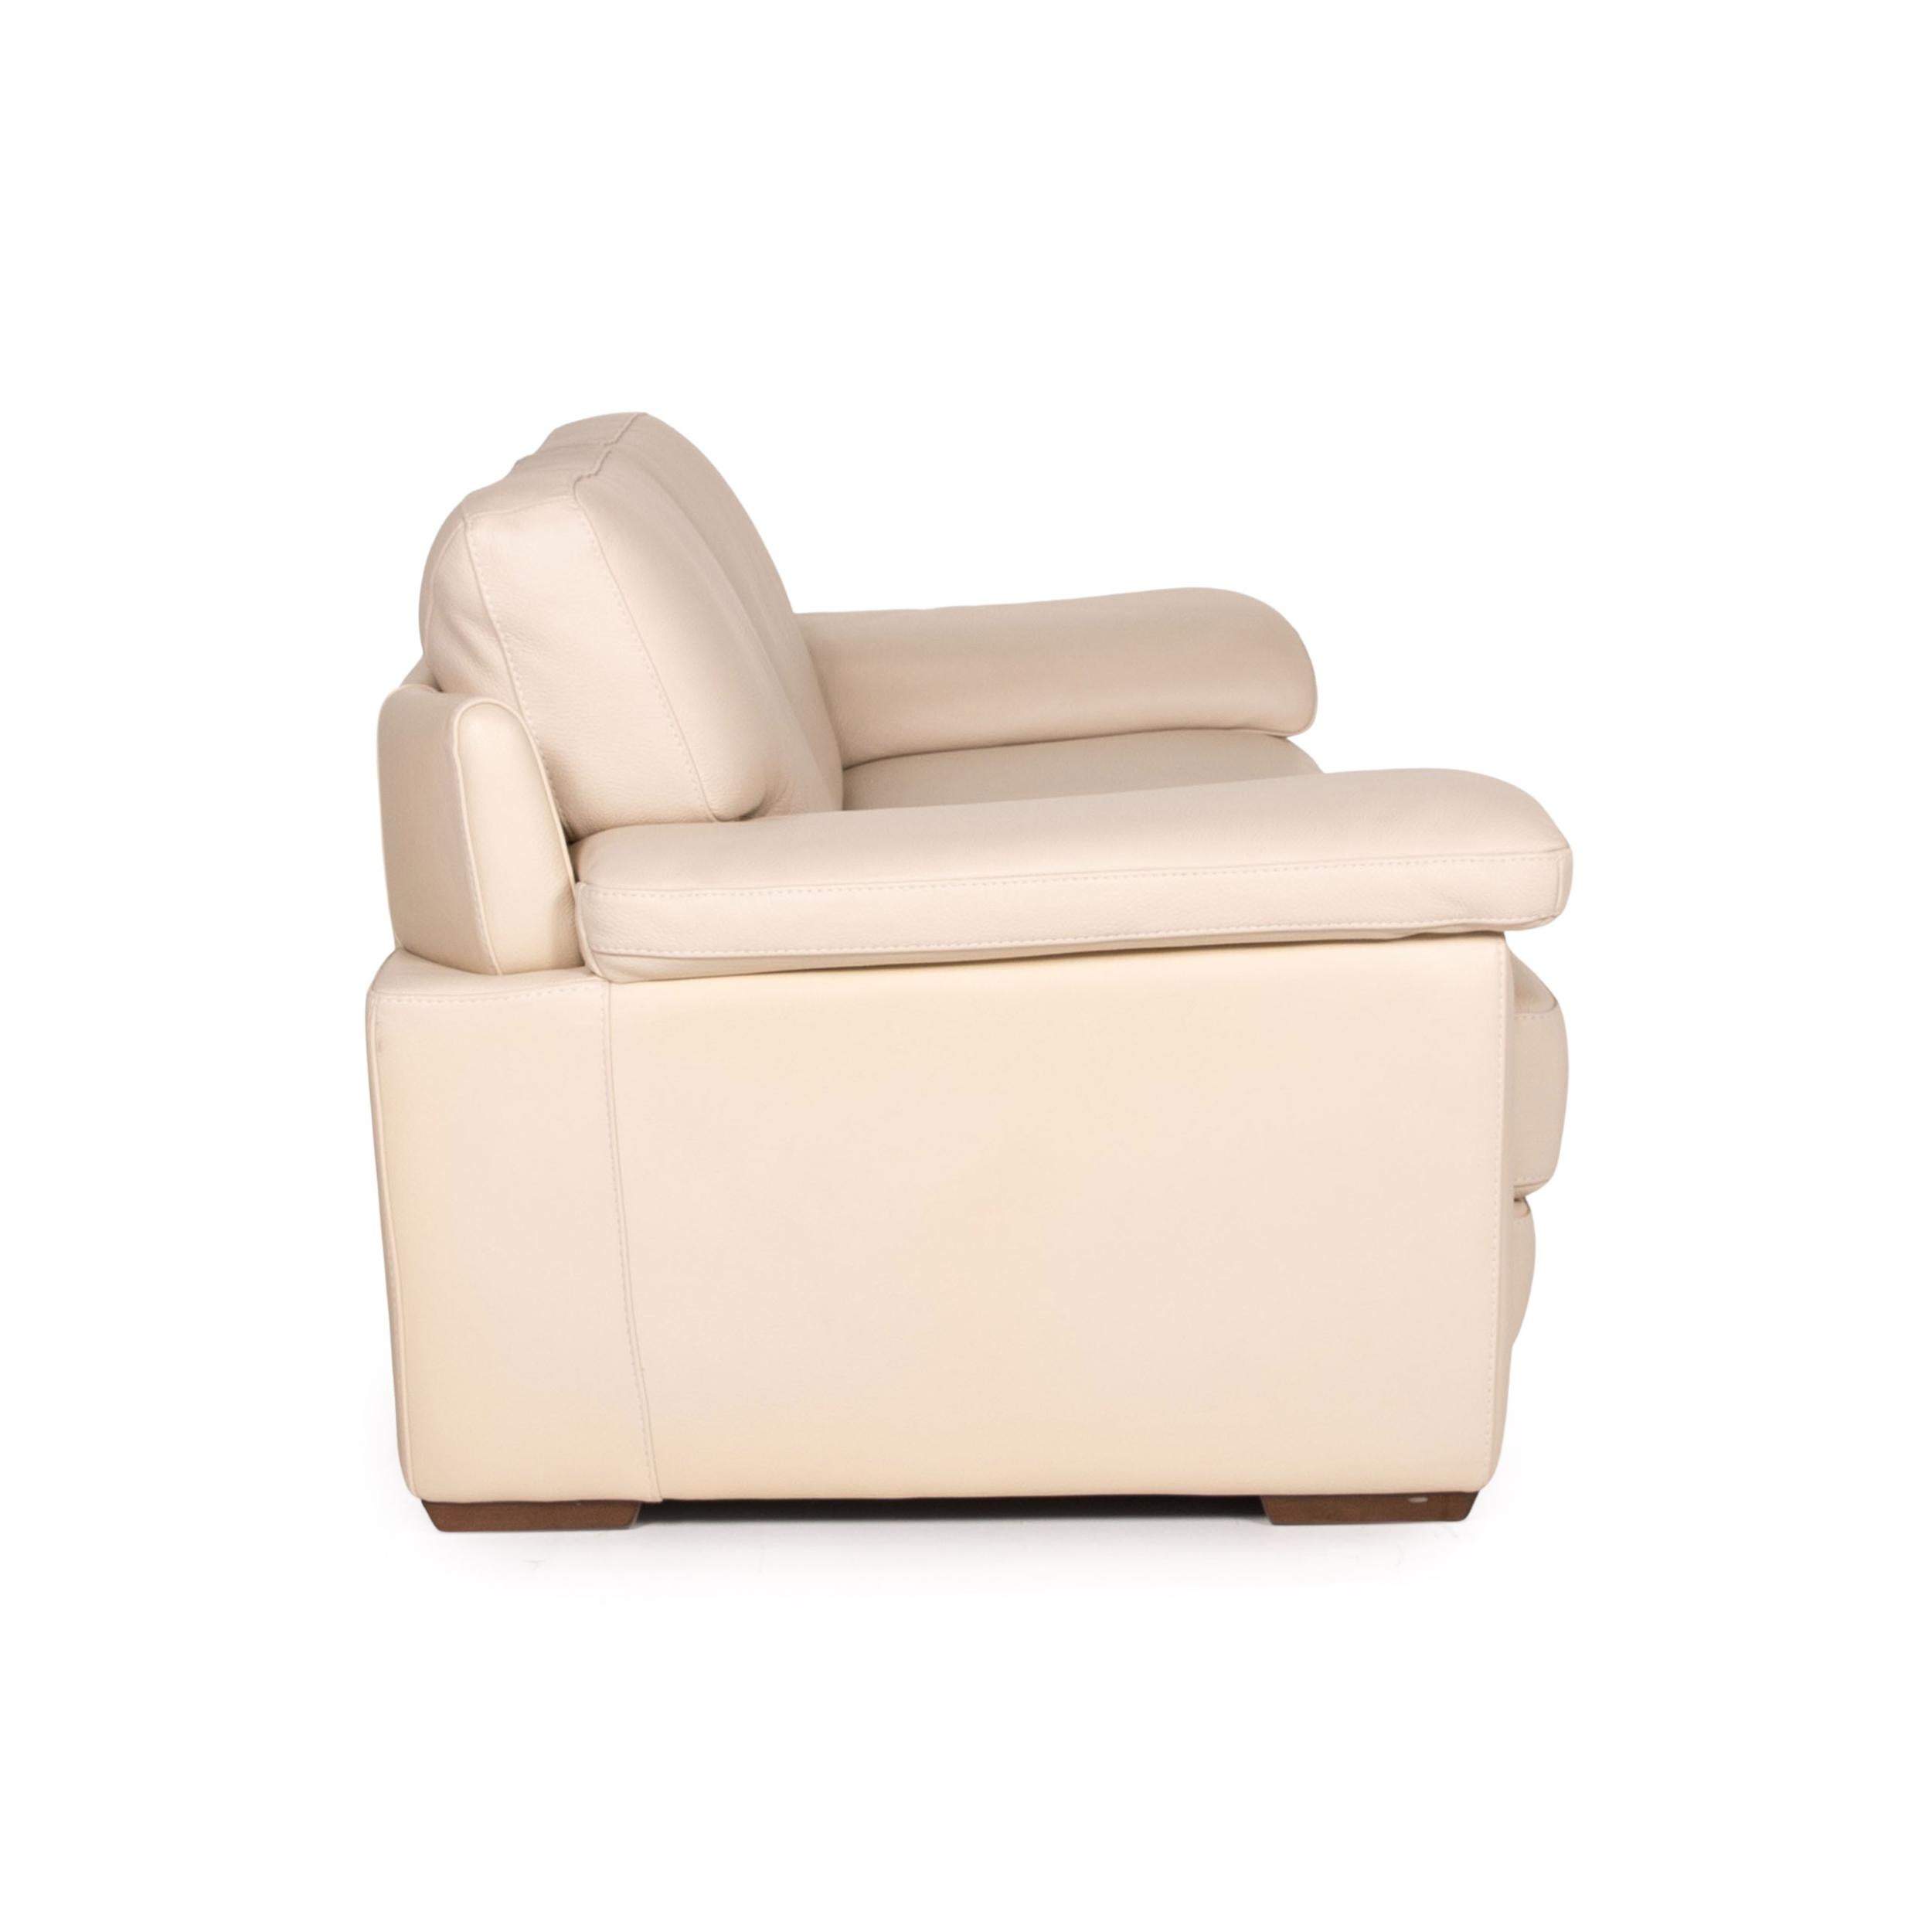 Natuzzi 2198 Leather Sofa Cream Three-Seater Couch In Good Condition In Cologne, DE